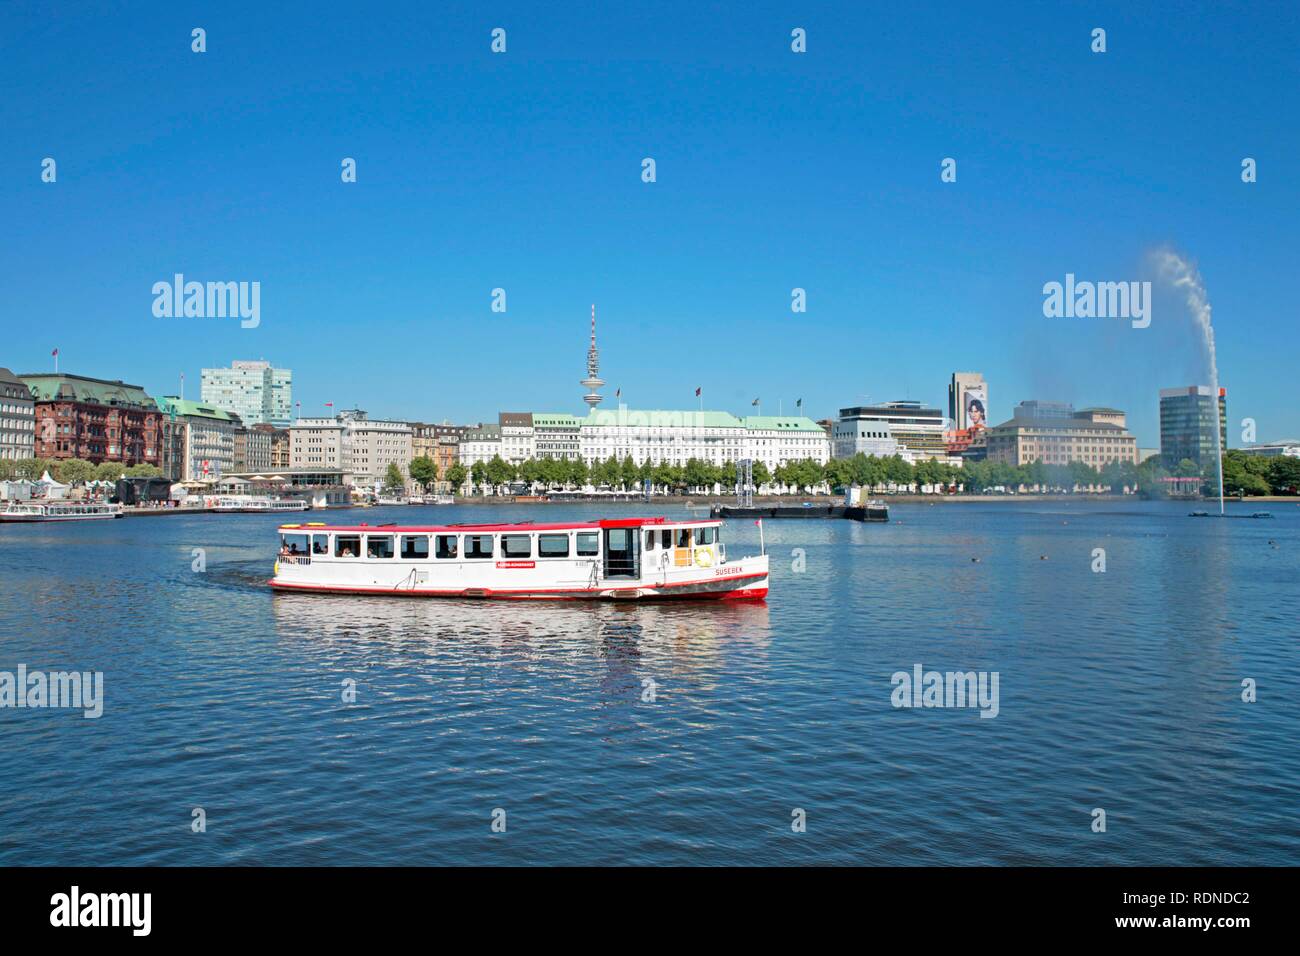 Passenger ship on the Inner Alster Lake, Hamburg Stock Photo